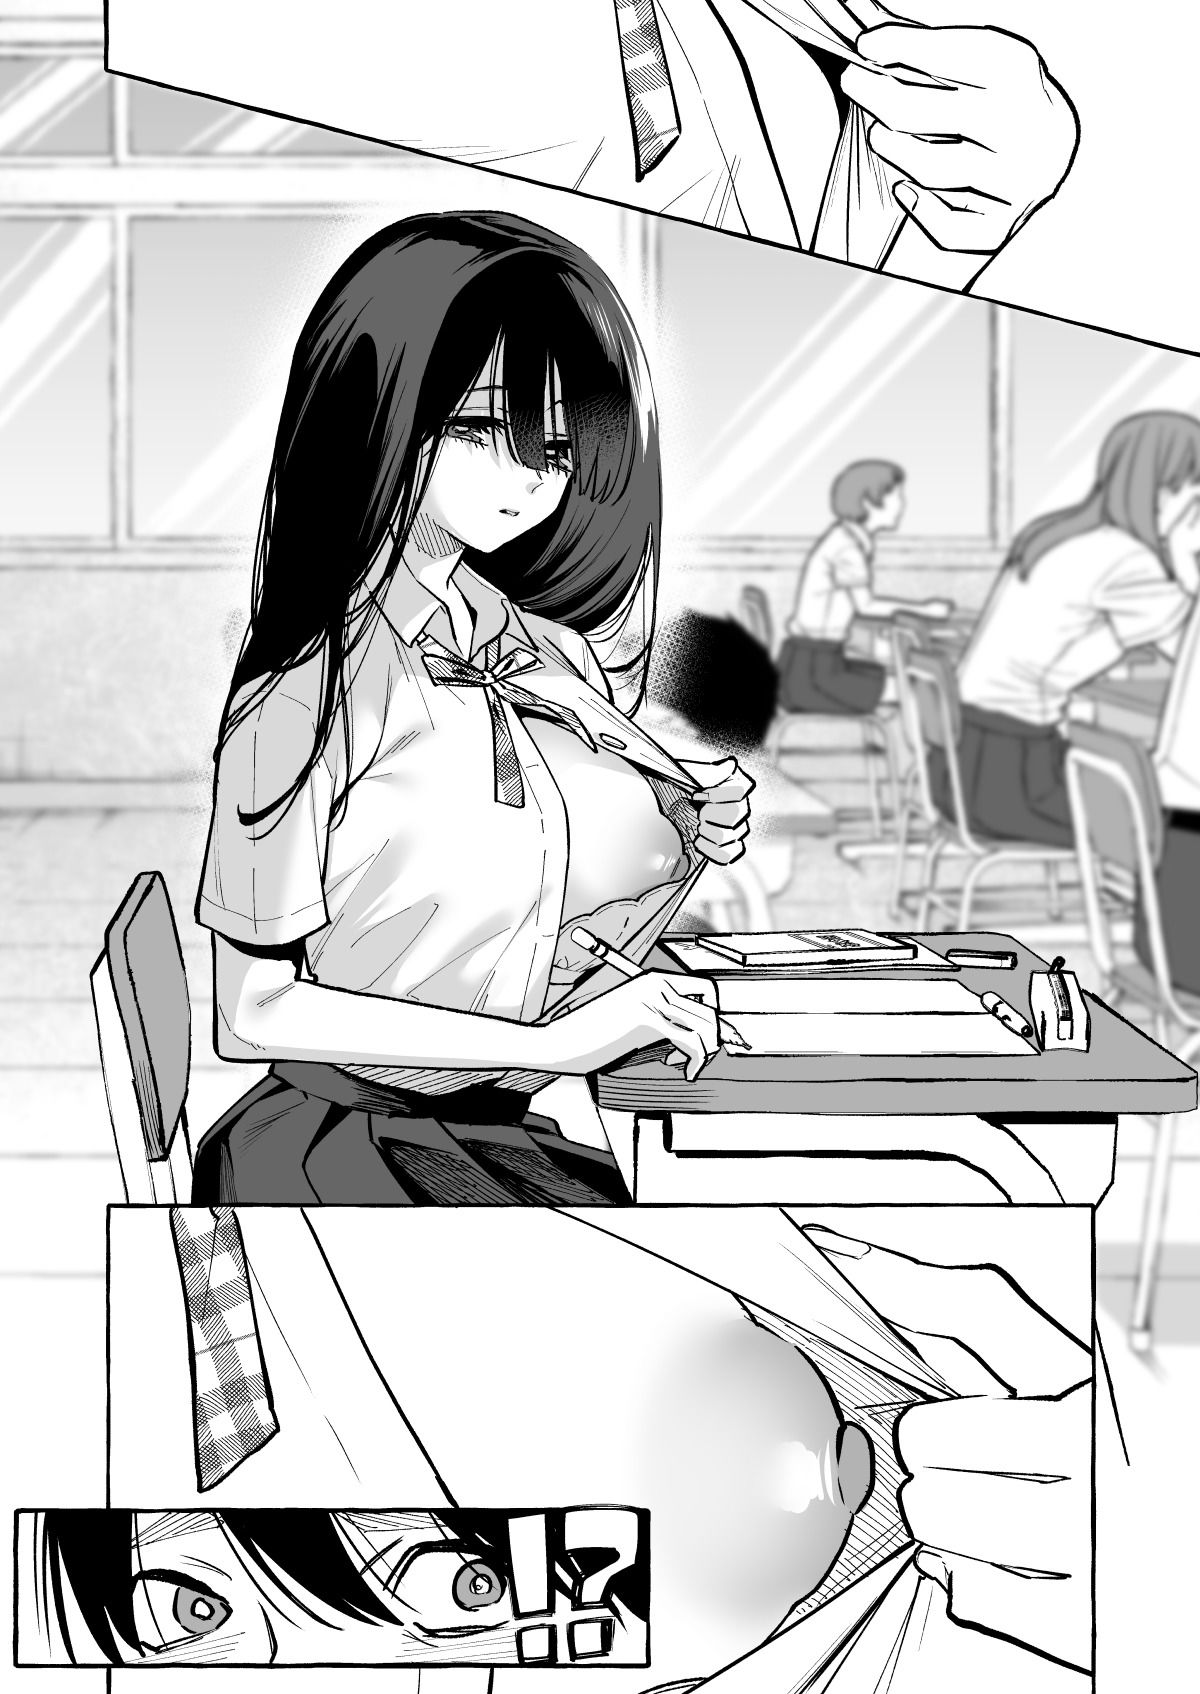 【エロ漫画無料大全集】【エロ漫画JK】授業中に隣の席の女の子がおっぱい見せつけてくるので授業に集中できるはずもなく…